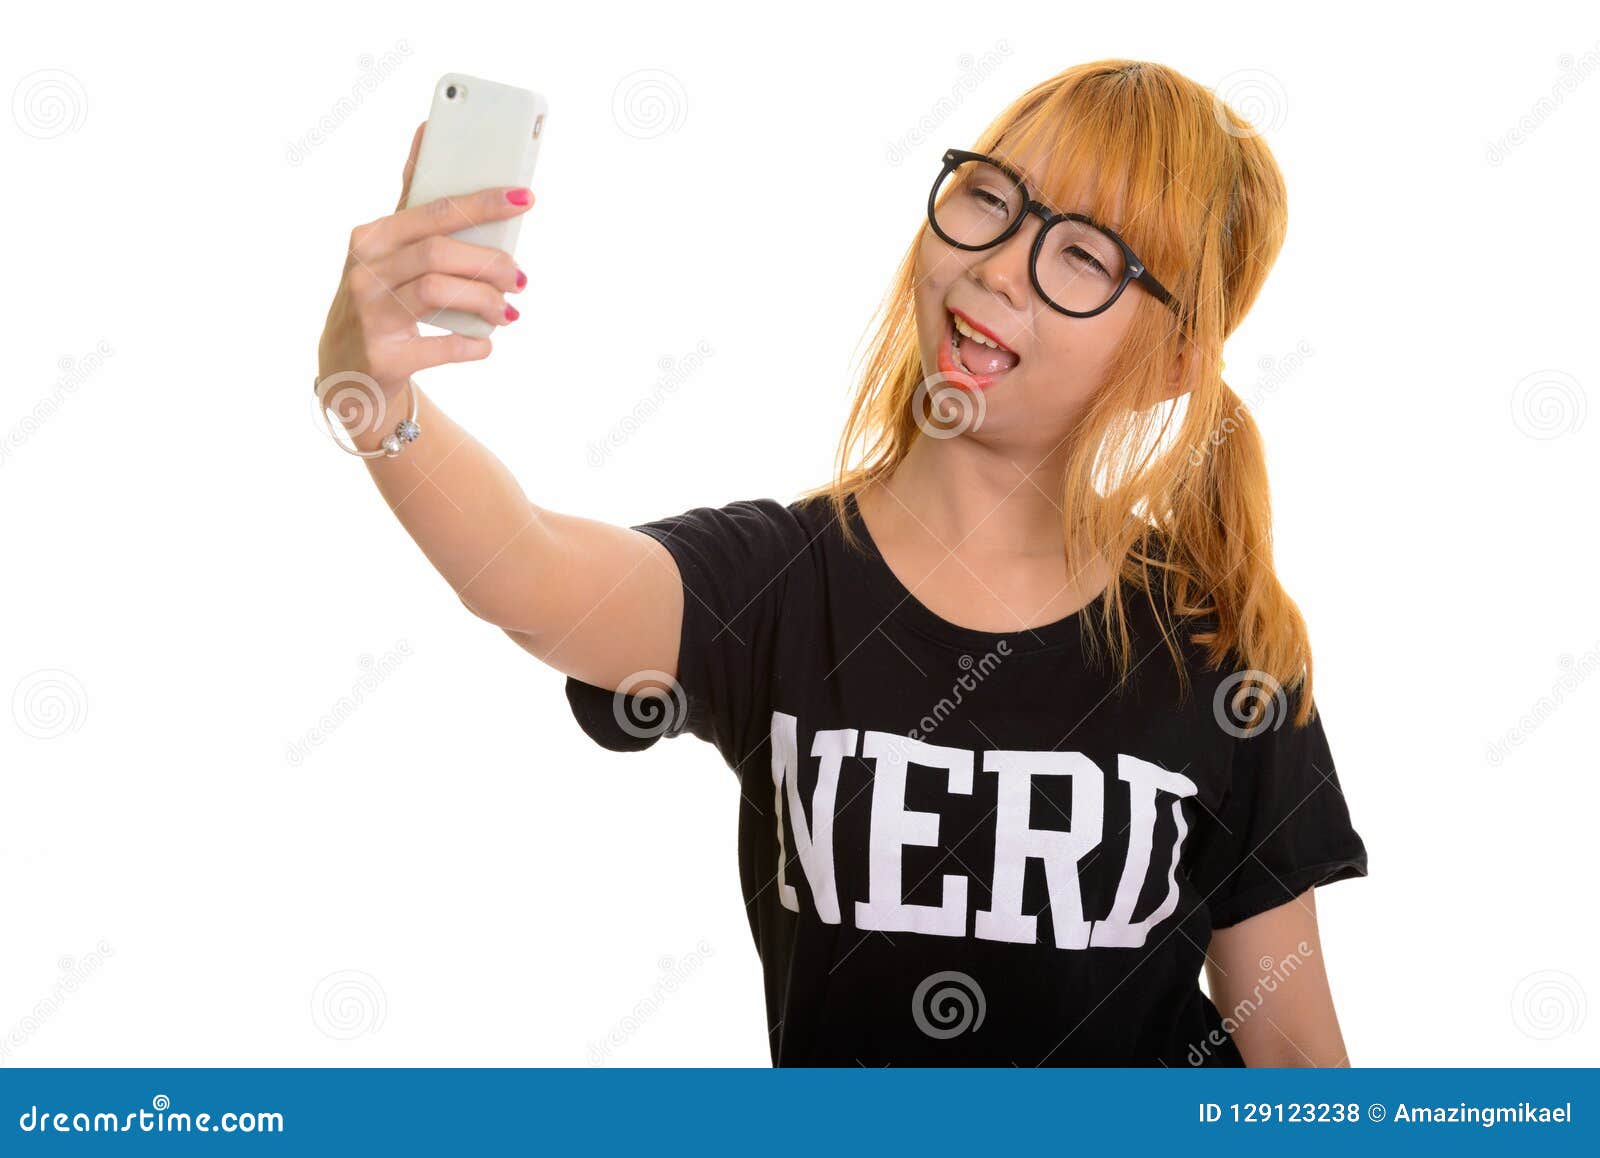 nerd teen girl selfie free pics hd